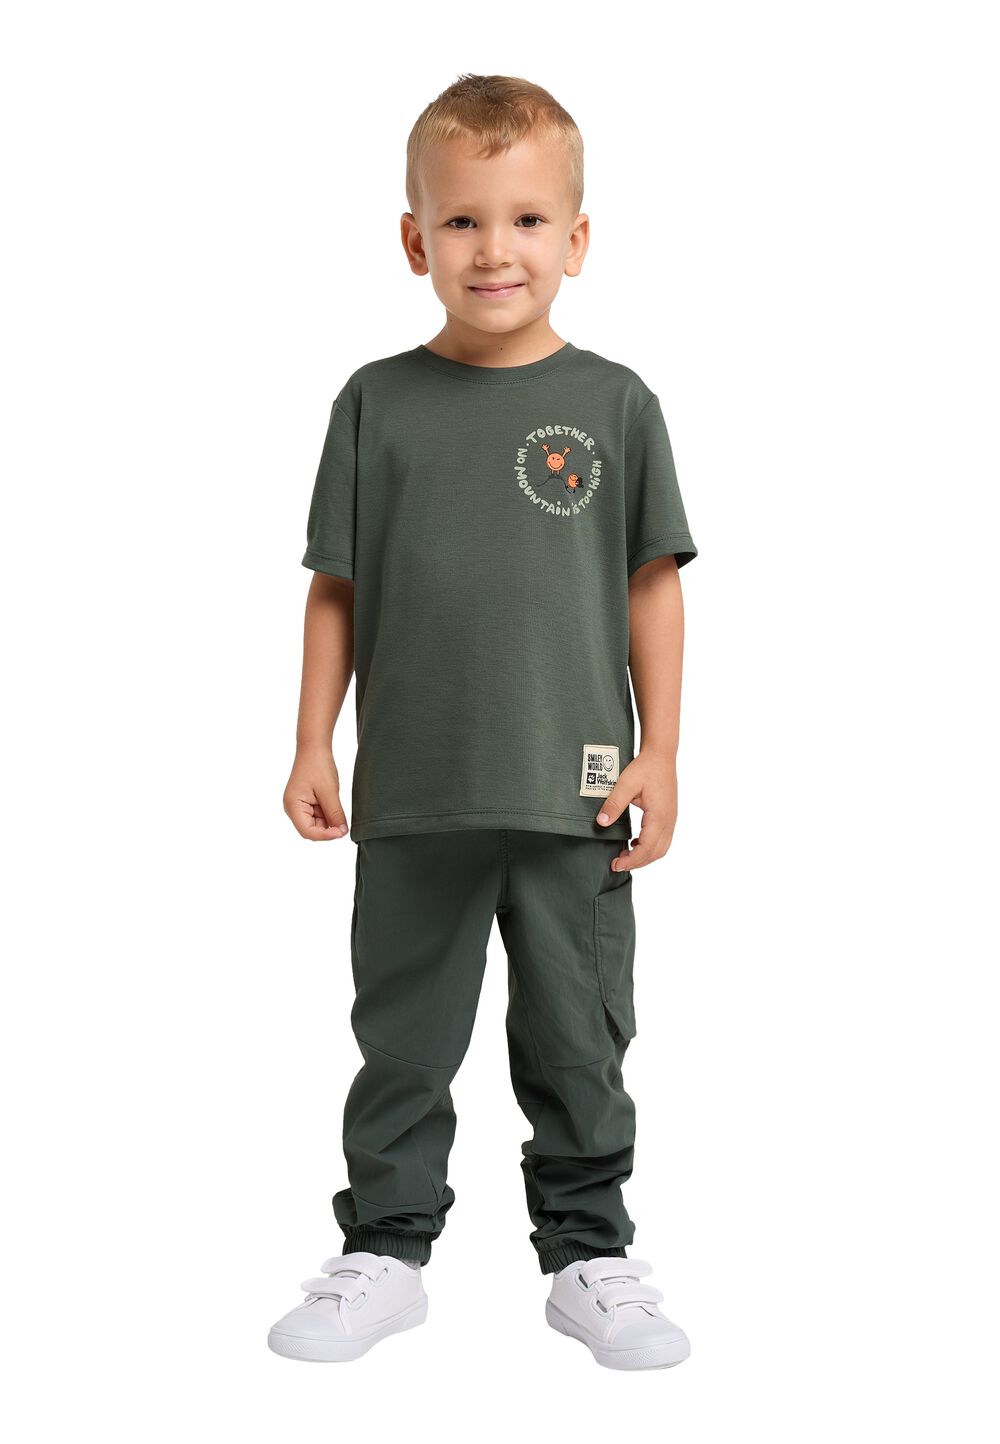 Jack Wolfskin Smileyworld Together T-Shirt Kids Functioneel shirt Kinderen 128 grijs slate green